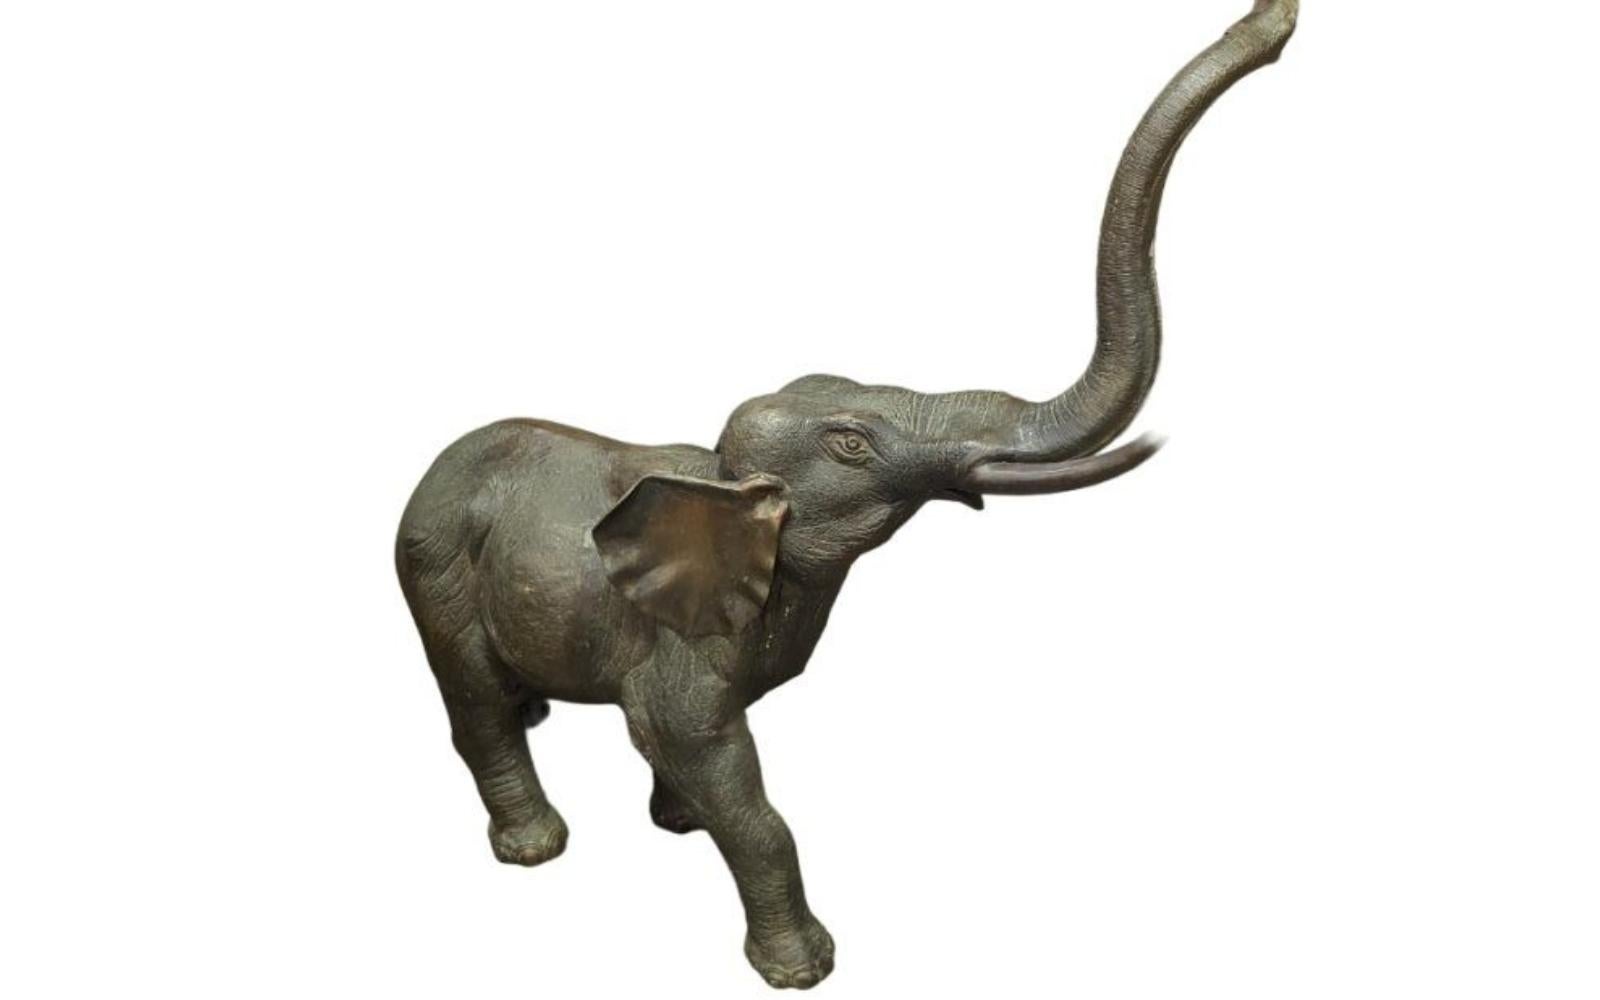 Sehr einzigartige und große Bronze-Elefanten-Skulptur. Es ist sehr gekonnt gemacht mit vielen schönen Details. Ein großartiges Akzentstück für jeden Raum.  Höhe: 47,25 Zoll, Länge: 15 Zoll, Breite: 44 Zoll, Basislänge: 15 Zoll, Basisbreite: 30 Zoll